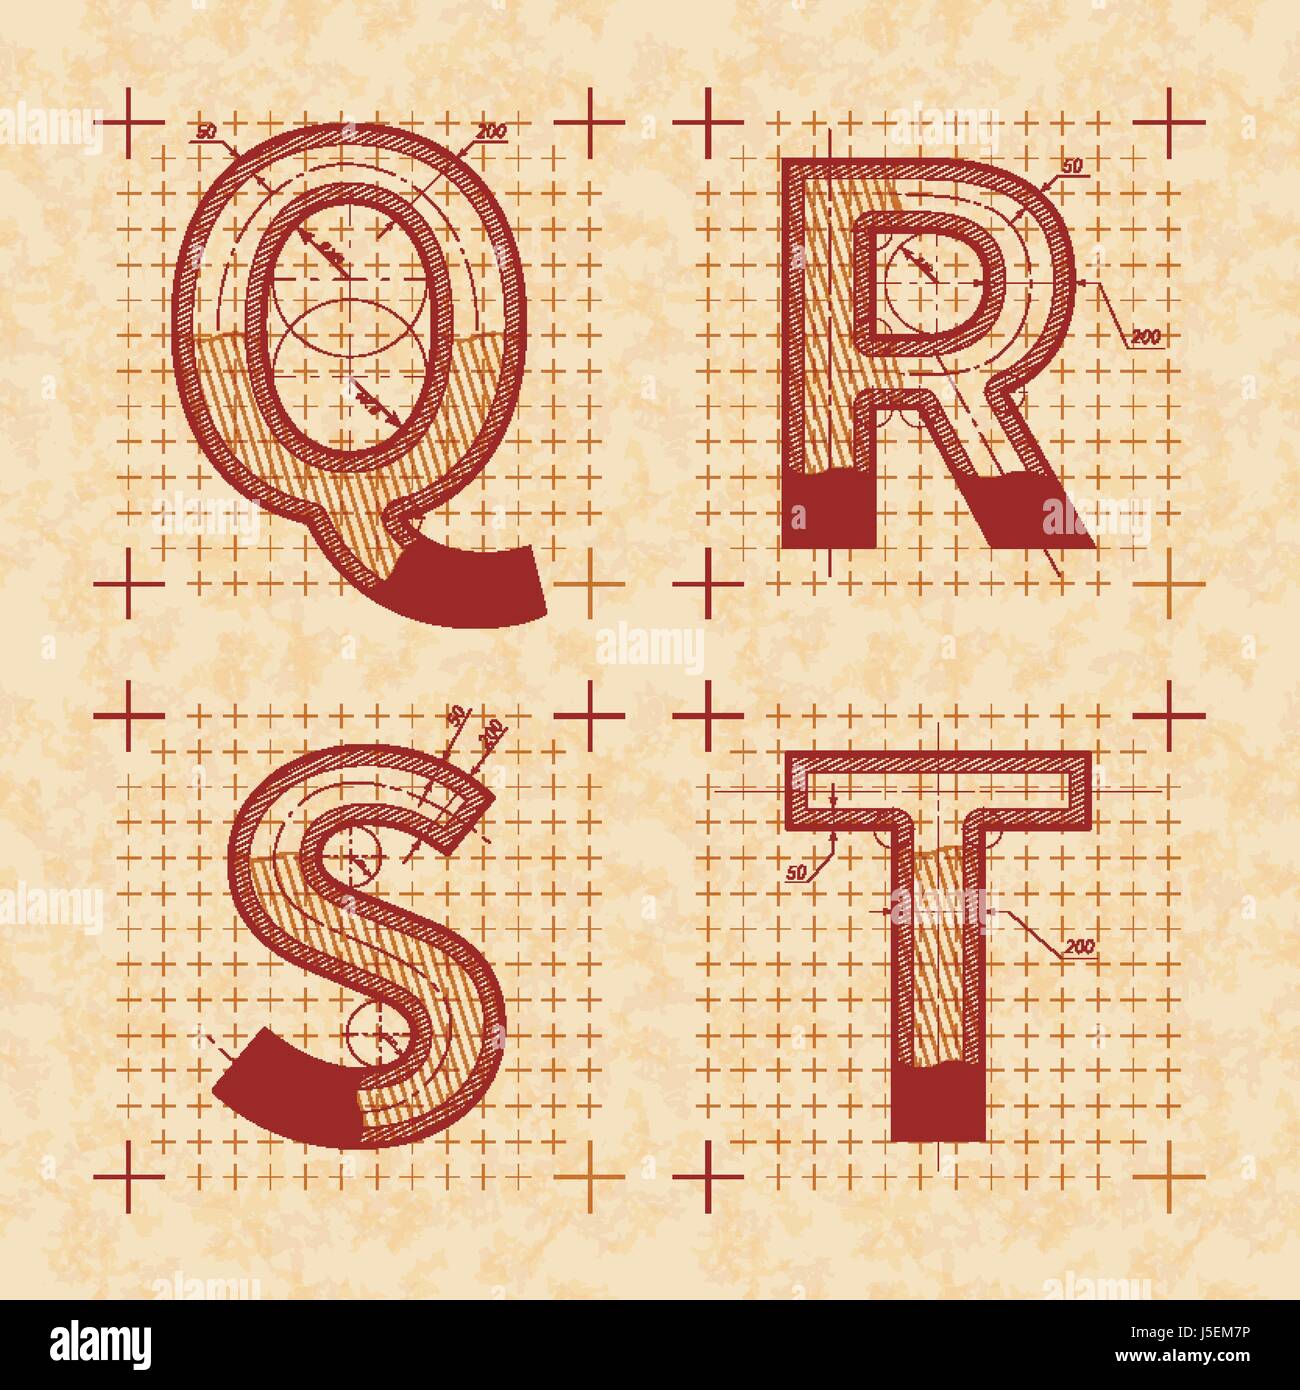 Inventore medievale schizzi di Q R S T lettere. In stile retrò font sulla vecchia carta testurizzata Illustrazione Vettoriale